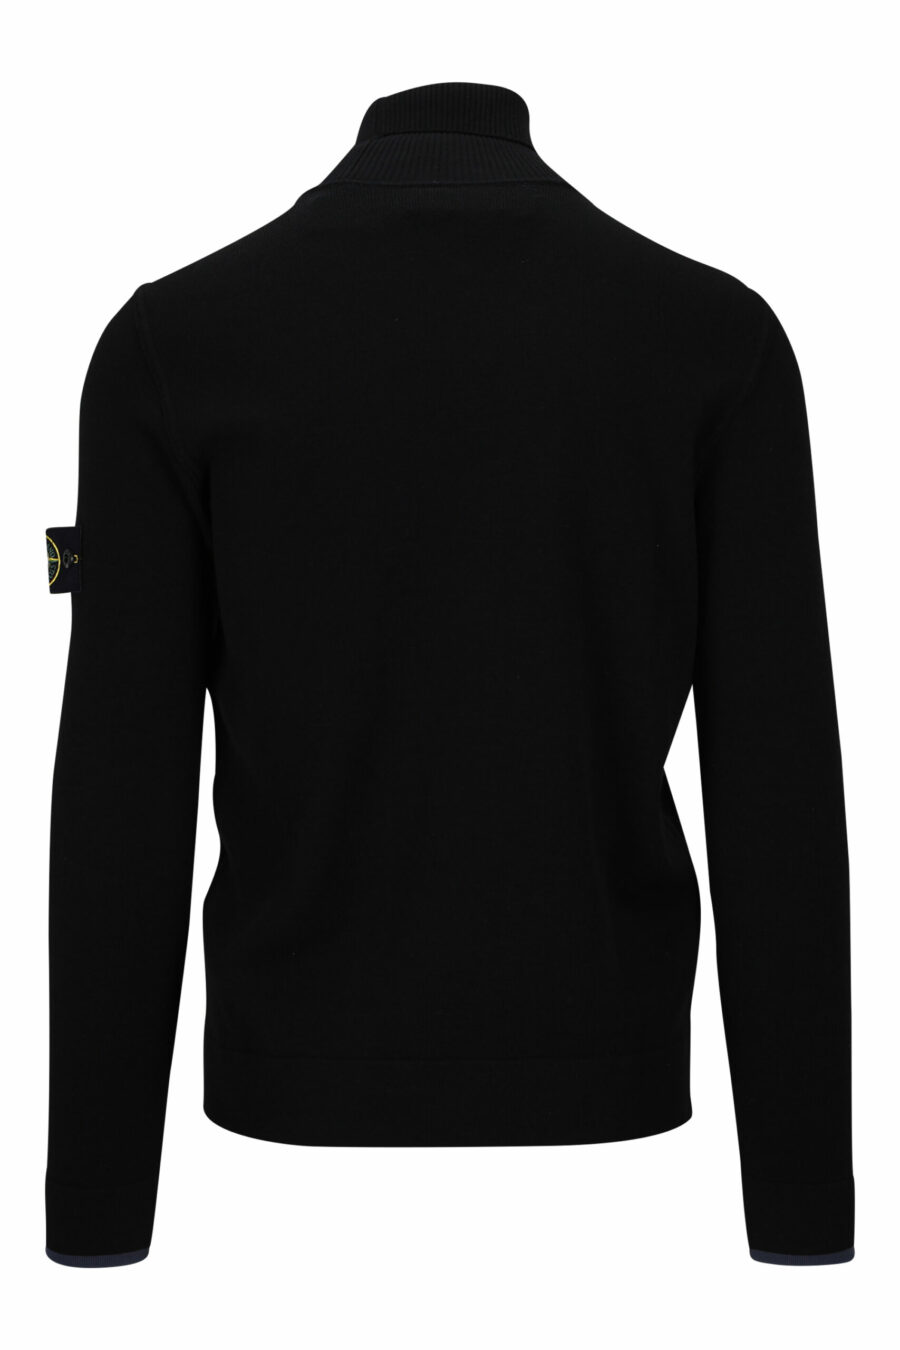 Schwarzes Sweatshirt mit hohem Kragen und seitlichem Logoaufnäher - 8052572741814 2 skaliert